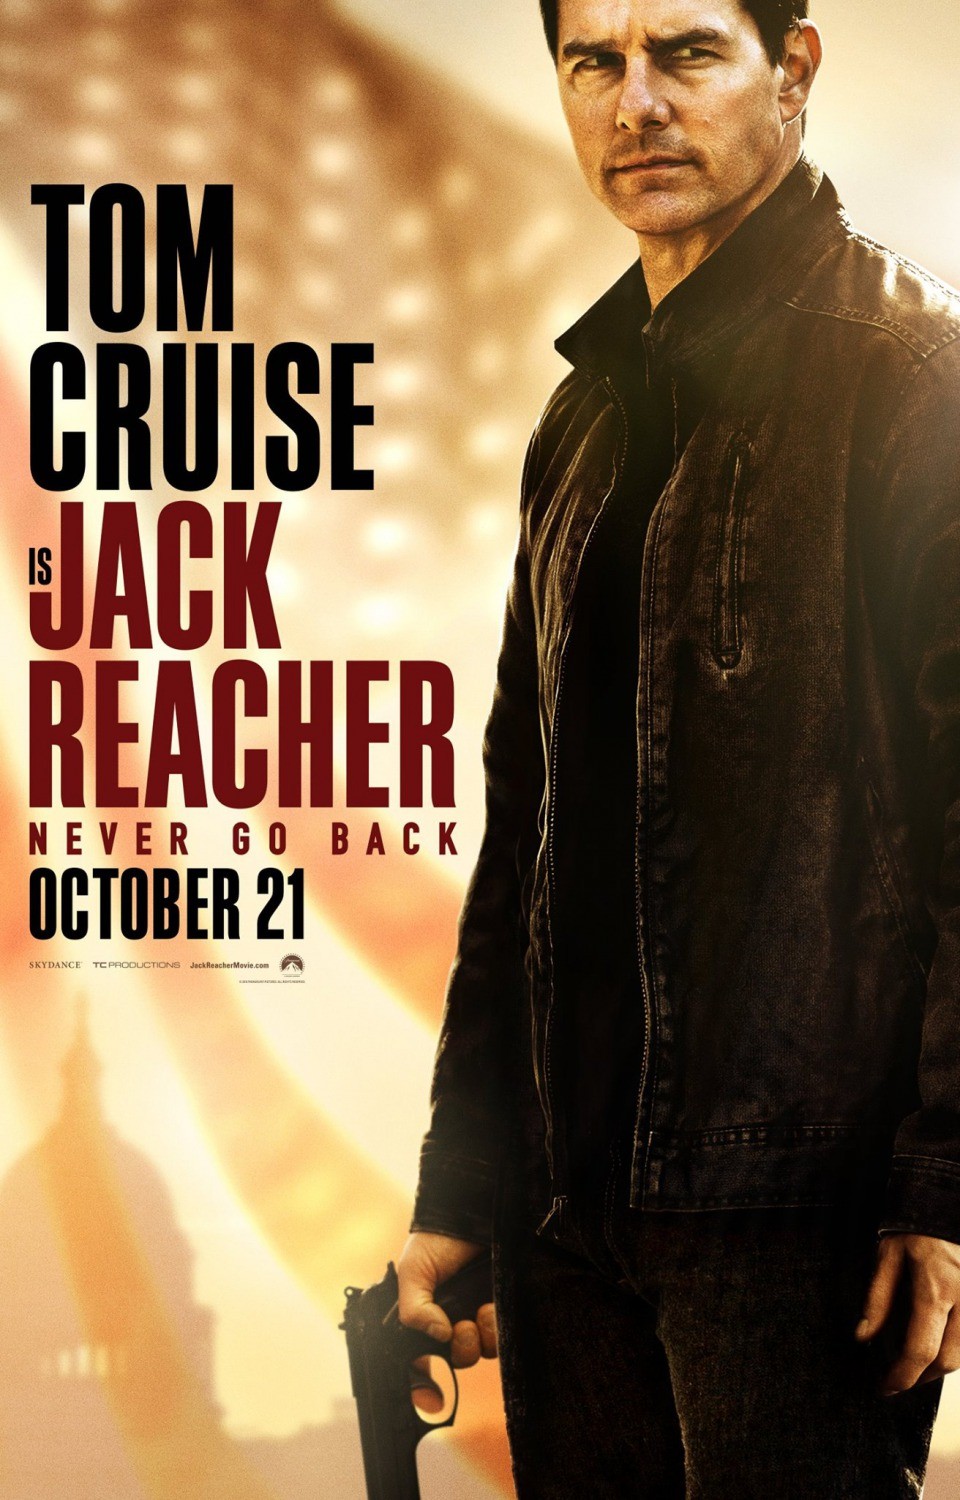 jack-reacher-2-spot-tv-in-italiano-e-nuova-locandina-del-sequel-con-tom-cruise.jpg